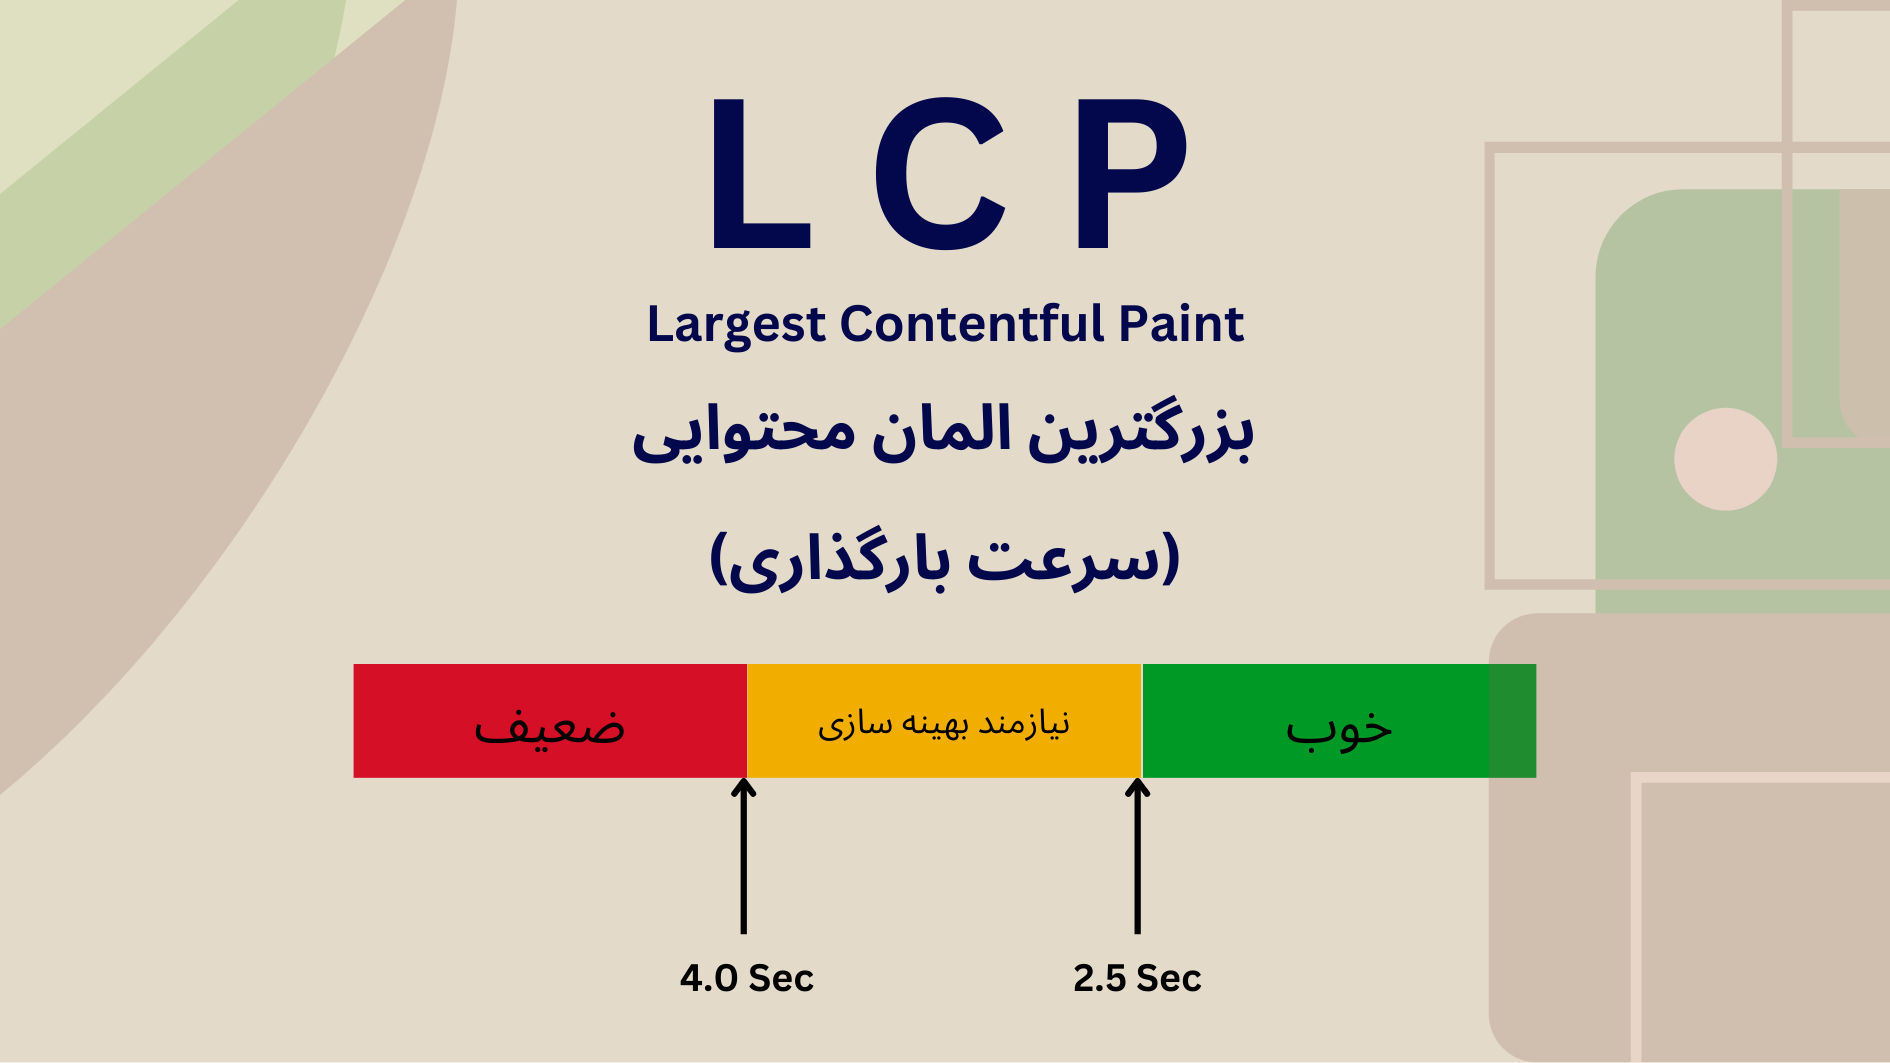 تأثیر LCP در بهینه سازی هسته مرکزی وبسایت